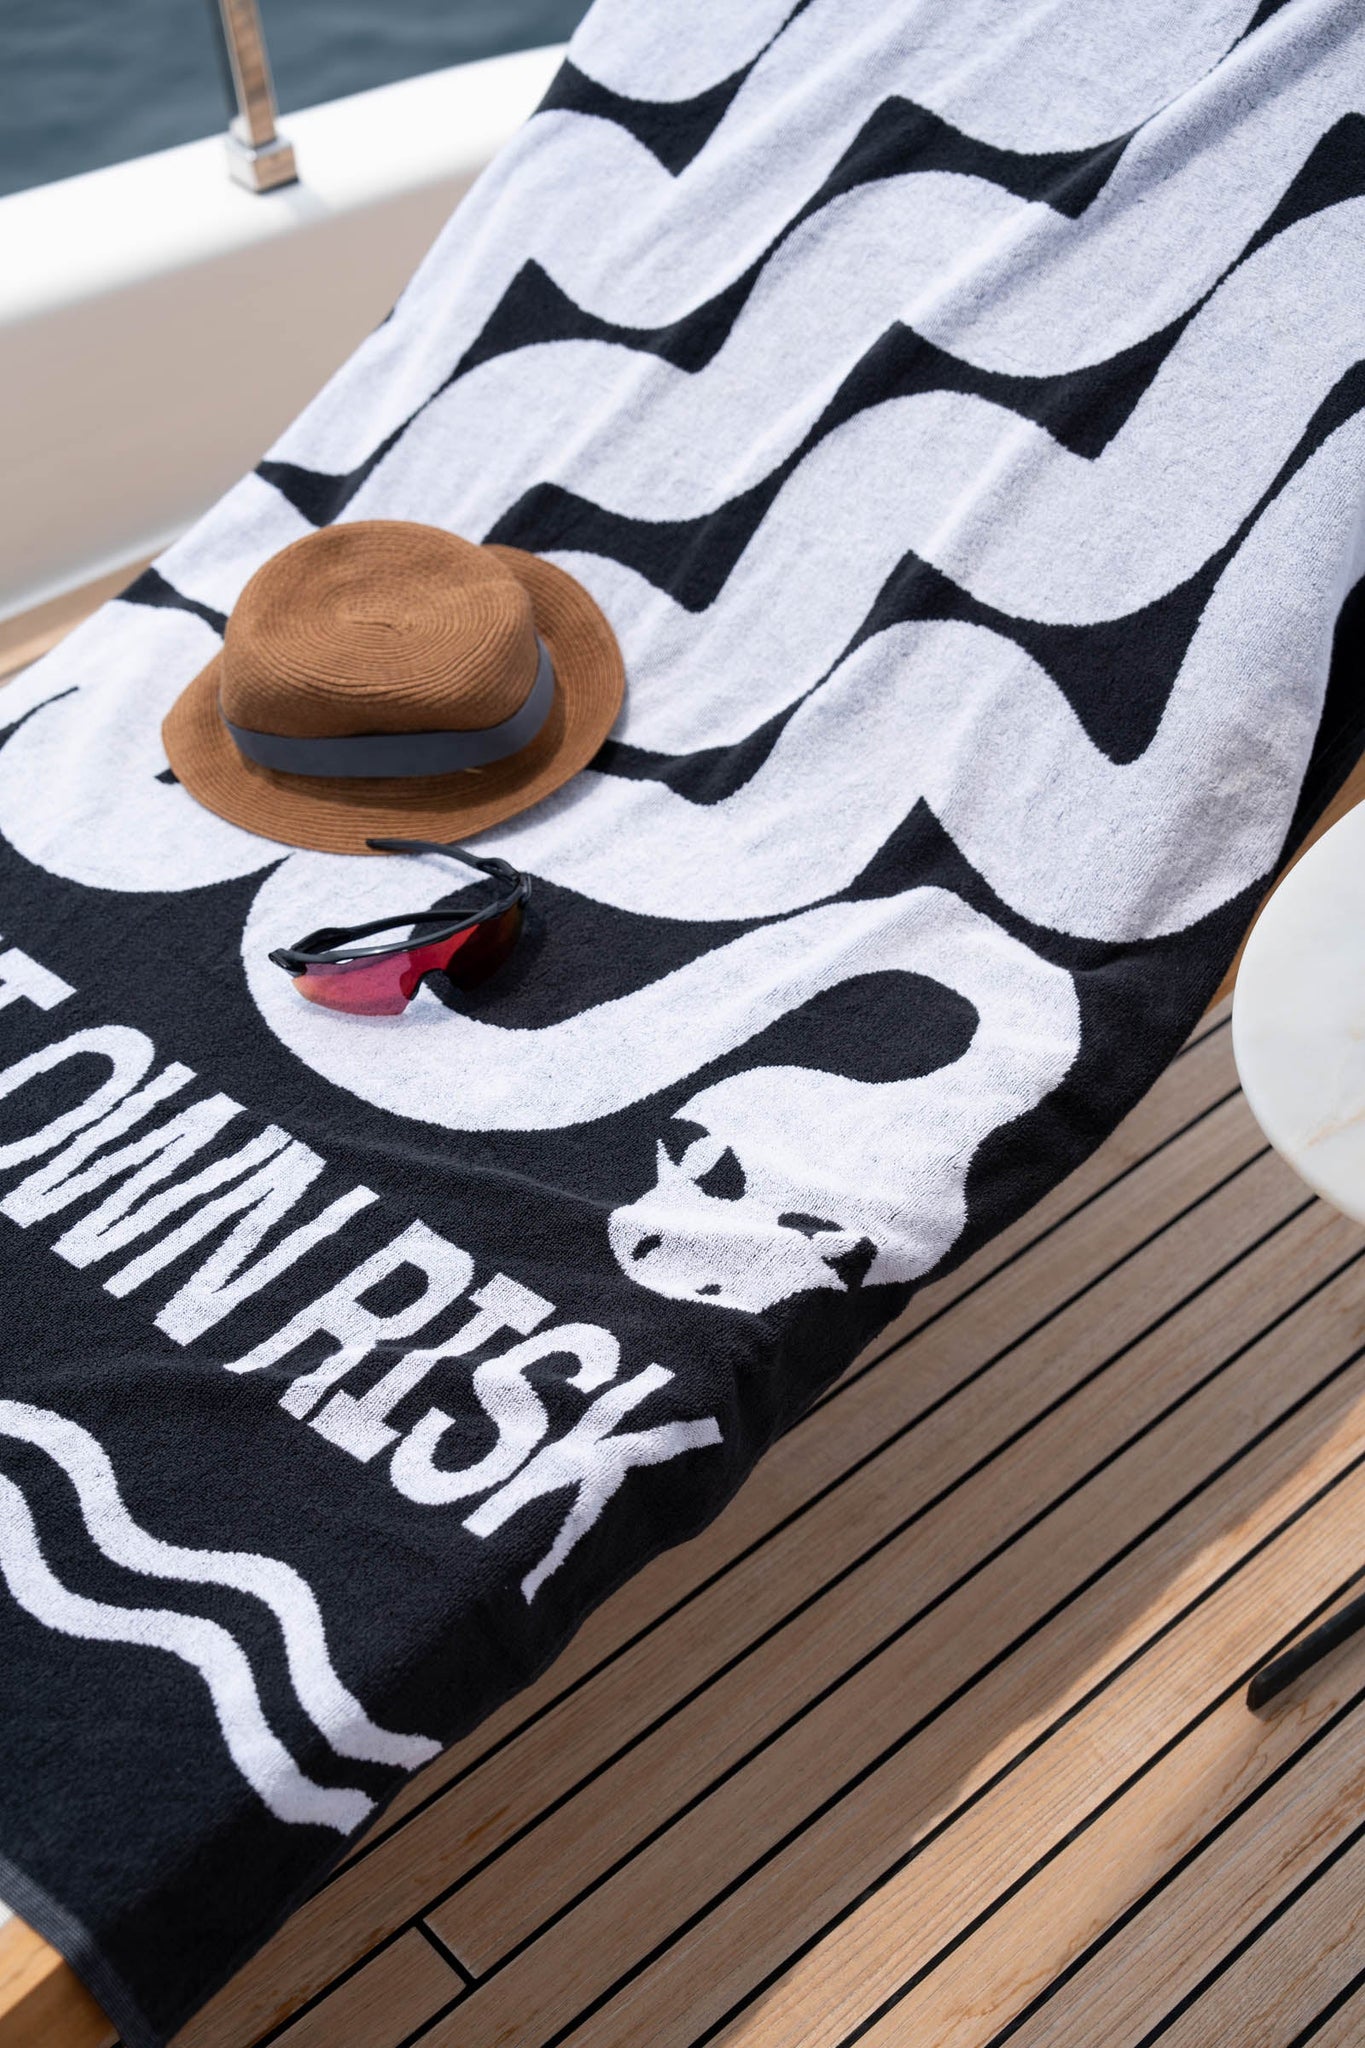 Alex khabbazi black and white snake beach towel 